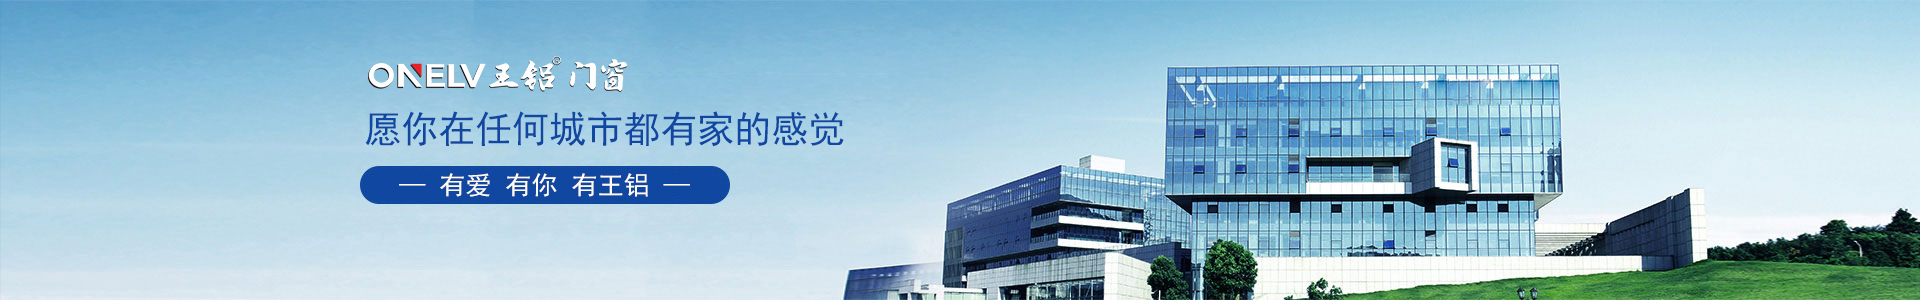 公司荣誉-yh86银河国际官方网站【企业官网】